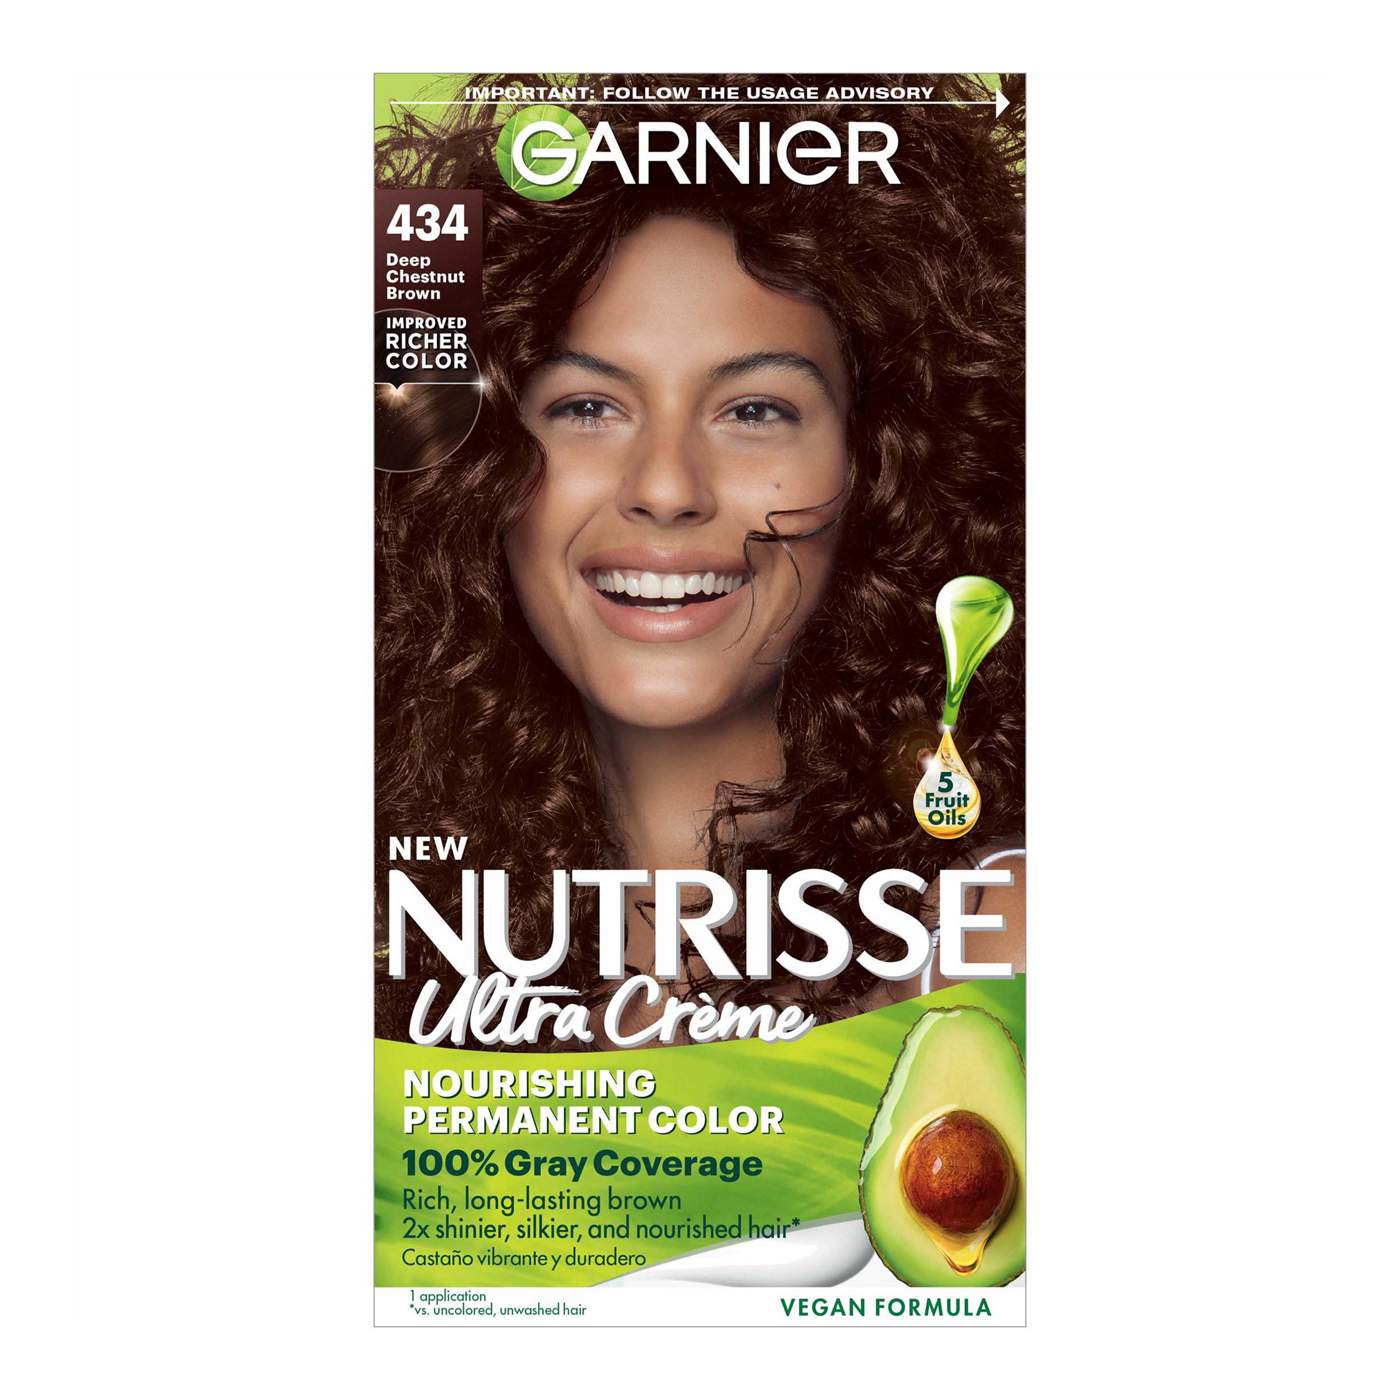 Garnier Nutrisse Nourishing Hair Color Creme - 434 Deep Chestnut Brown; image 1 of 10